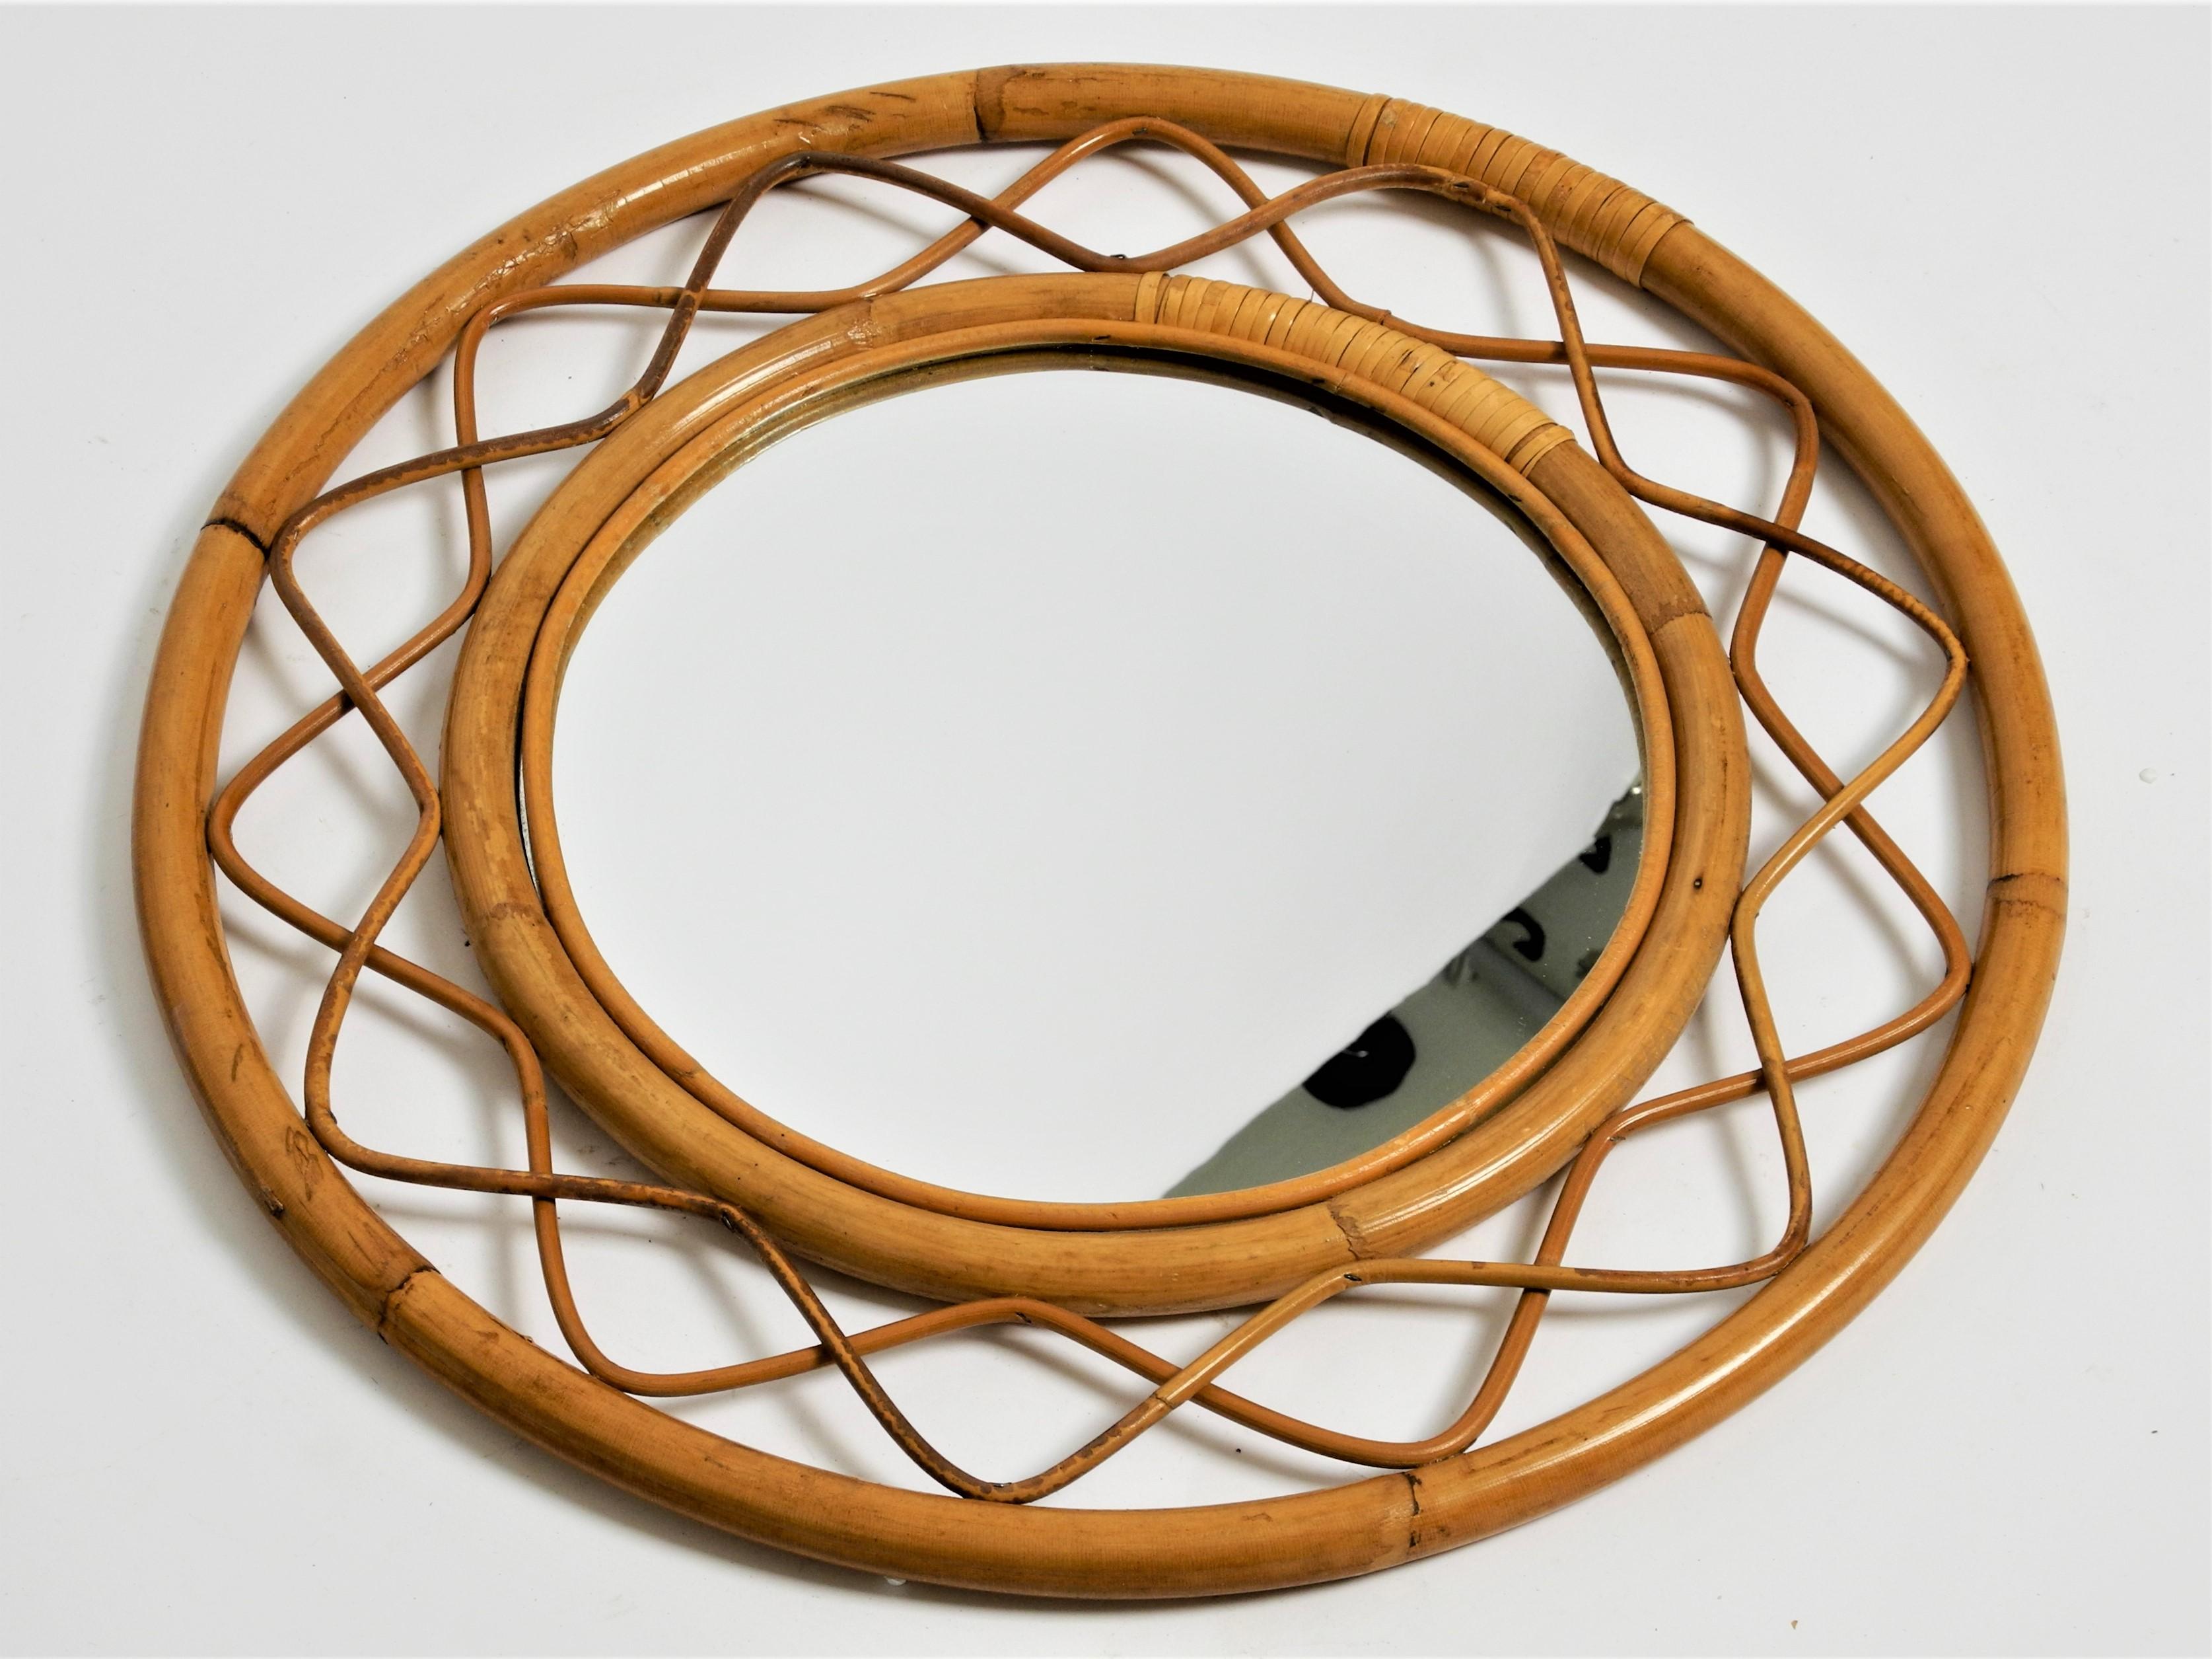 Miroir vintage rond en rotin de bambou avec panneau arrière en bois, Italie, années 70.

Dimensions :
Diamètre total 50cm/19,7inch
Diamètre du miroir 28,5cm/11,2inch
Profondeur 2.5cm/1.0inch.

Le miroir est dans un très bon état vintage avec